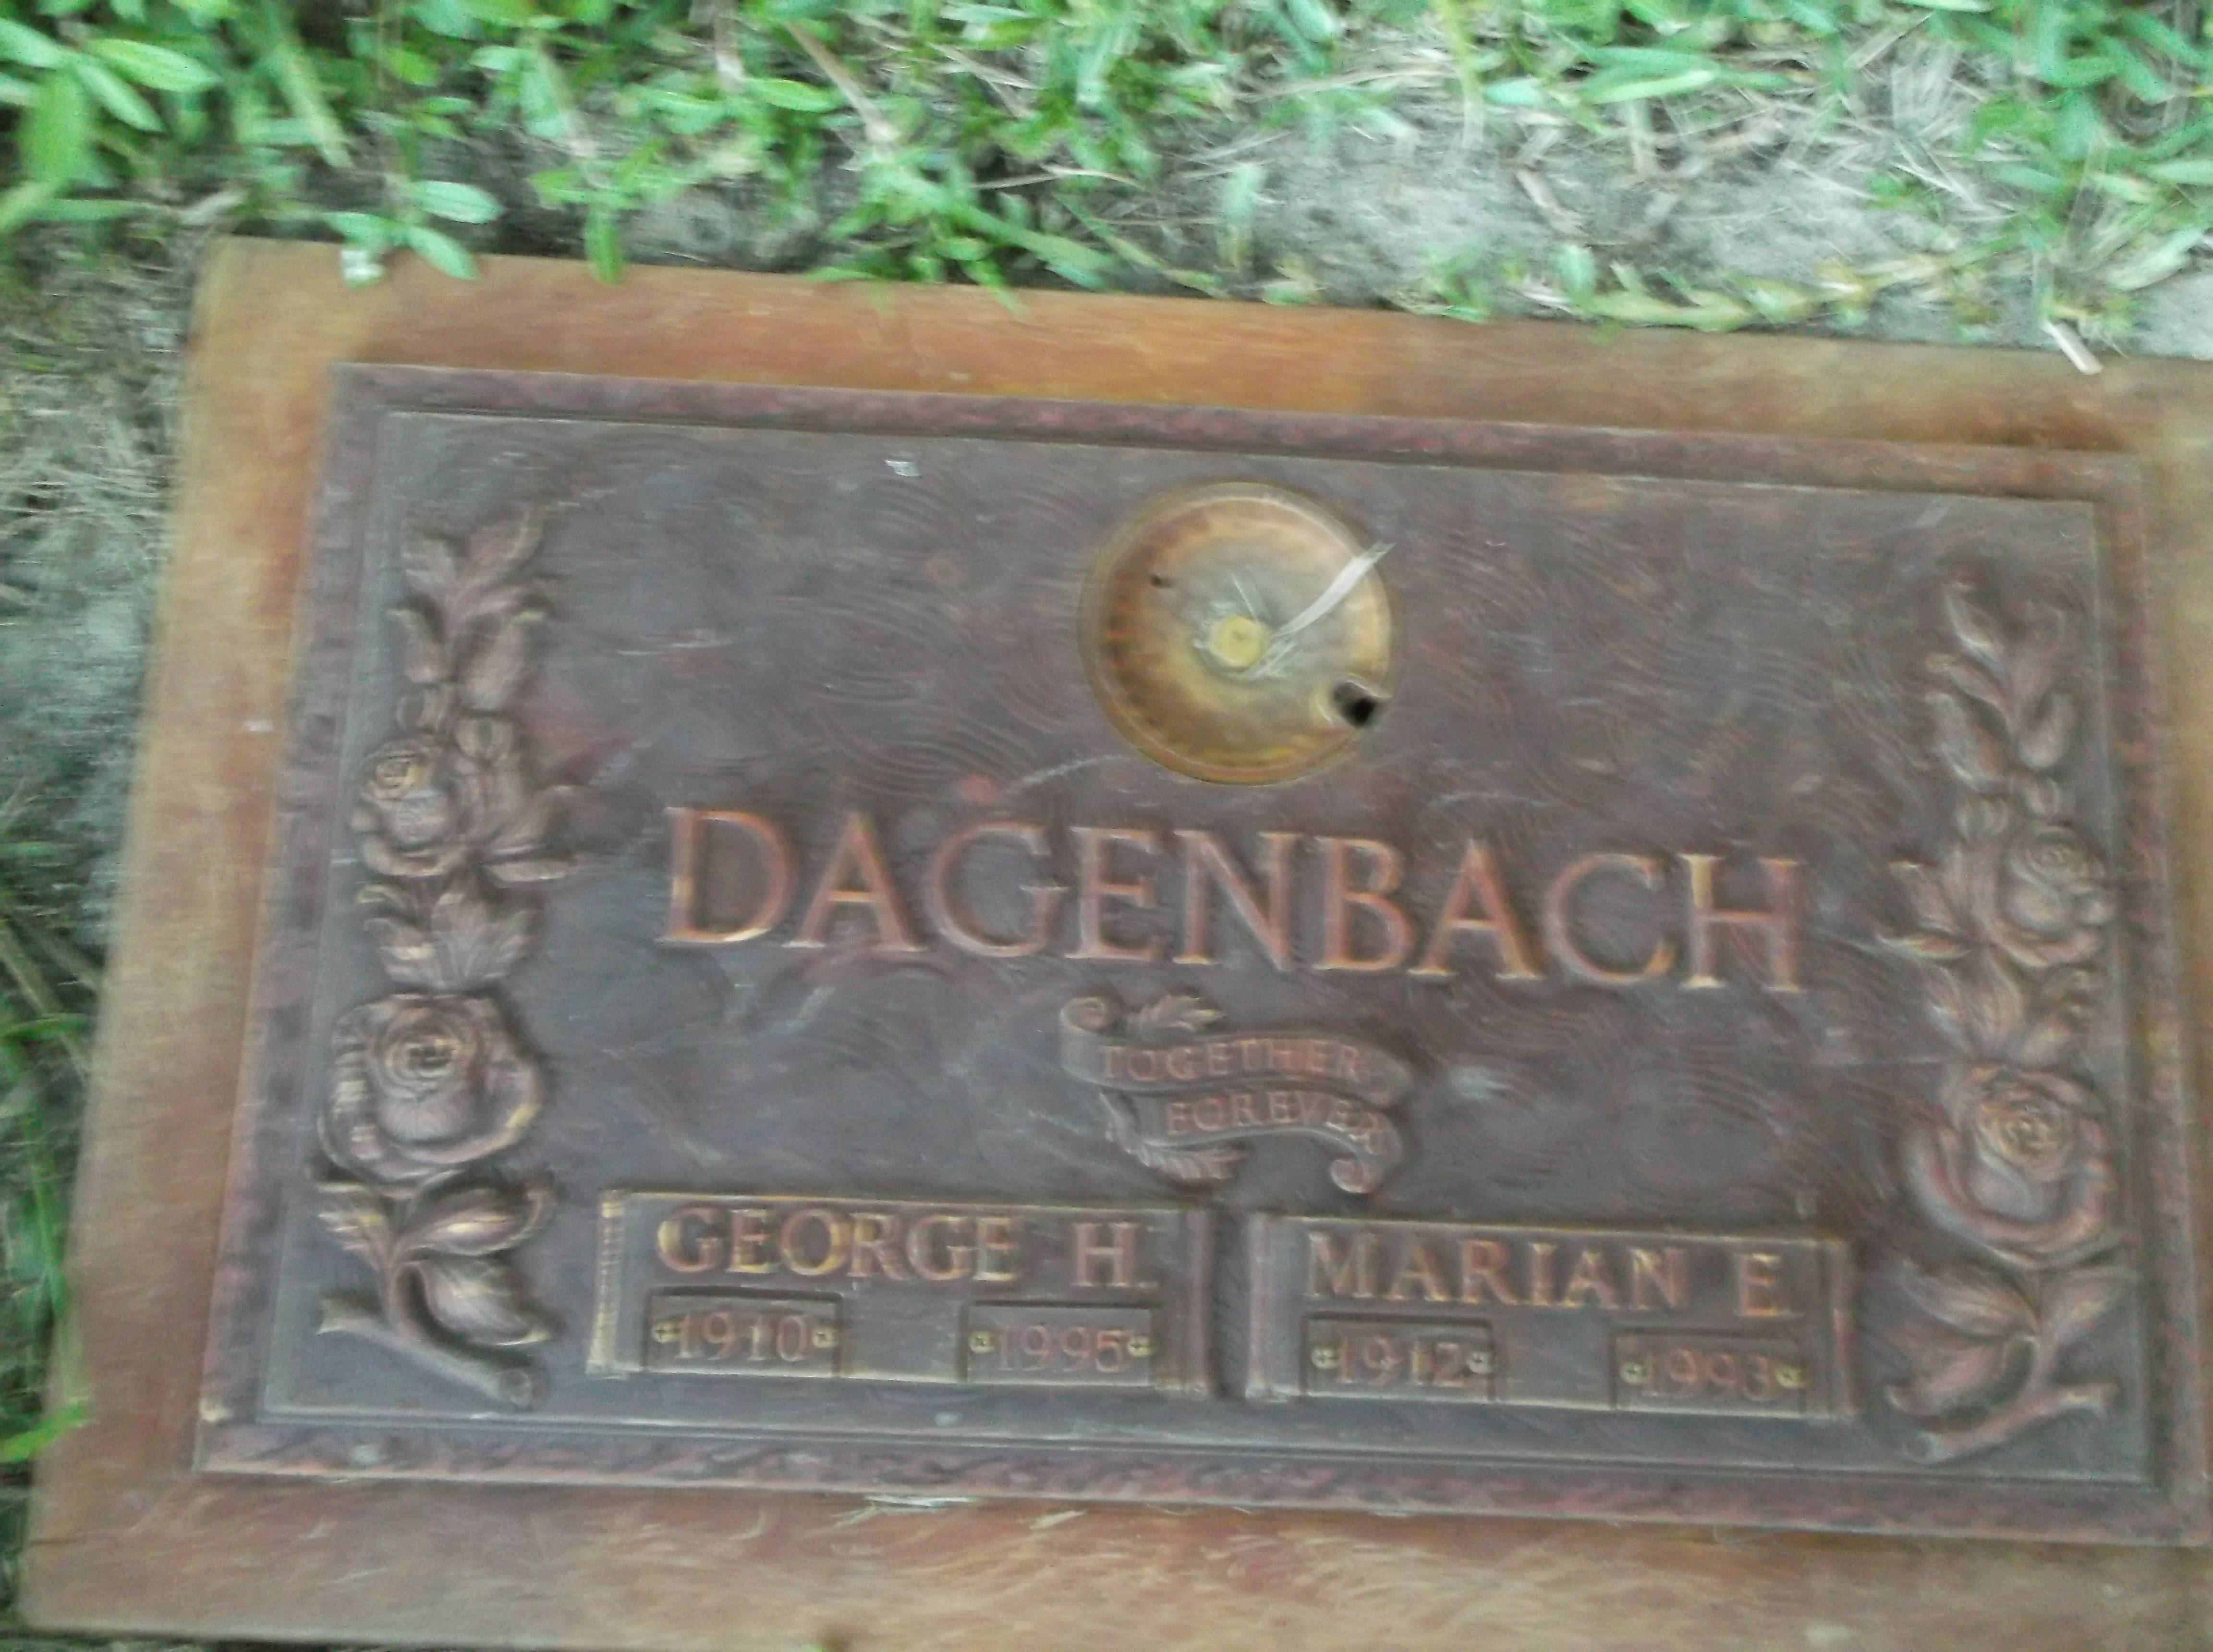 George H Dagenbach